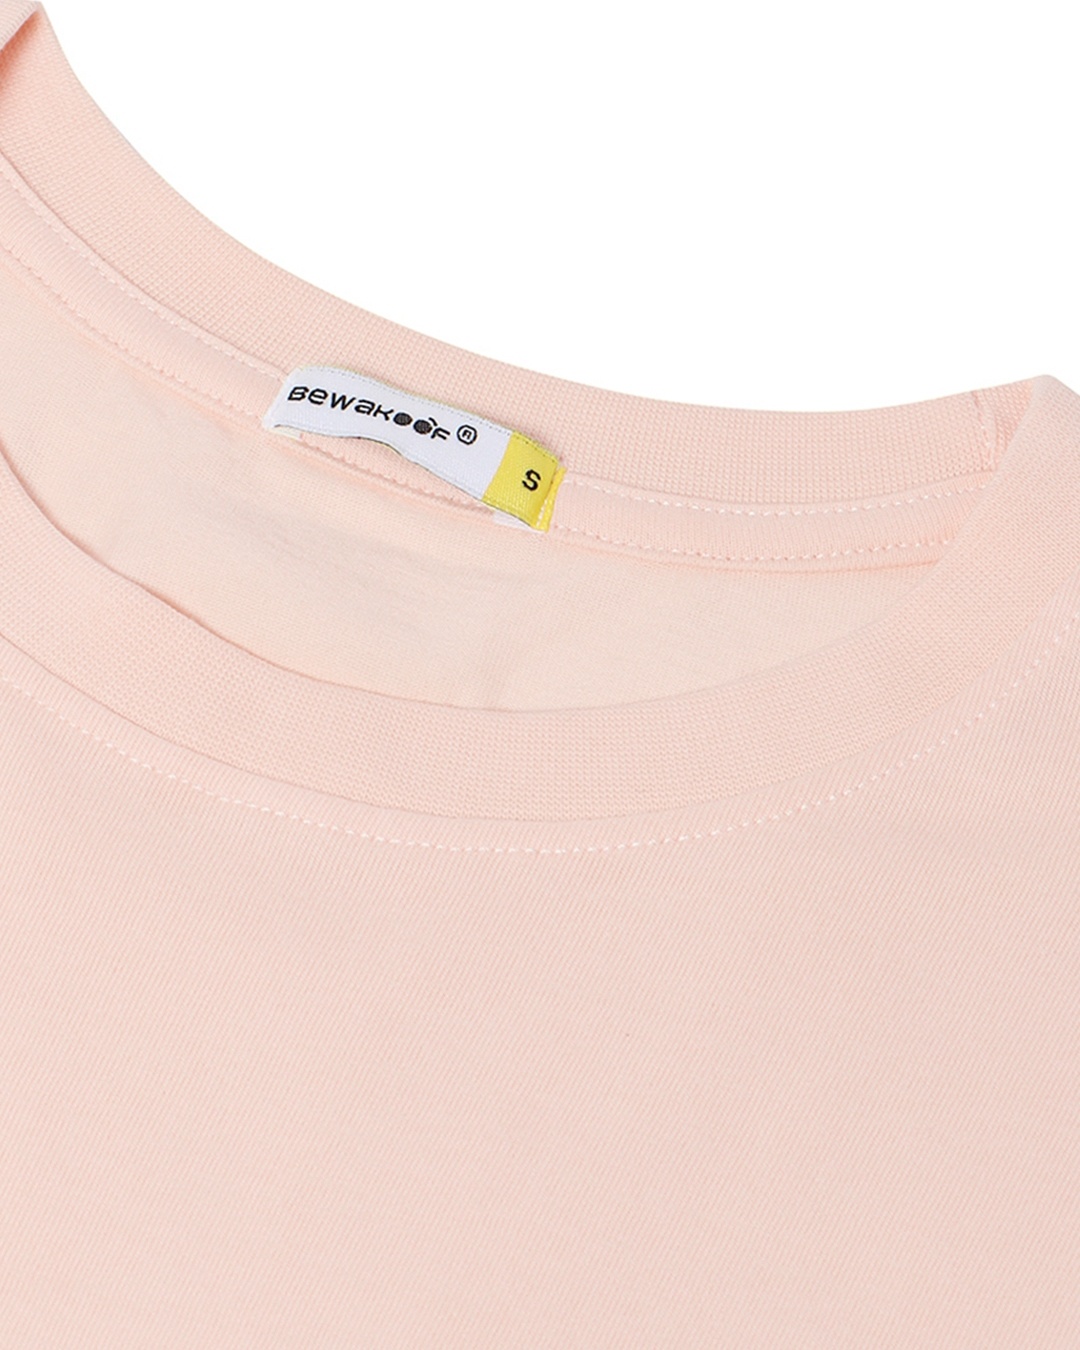 Shop Women's Pink Starboi Graphic Printed Boyfriend T-shirt